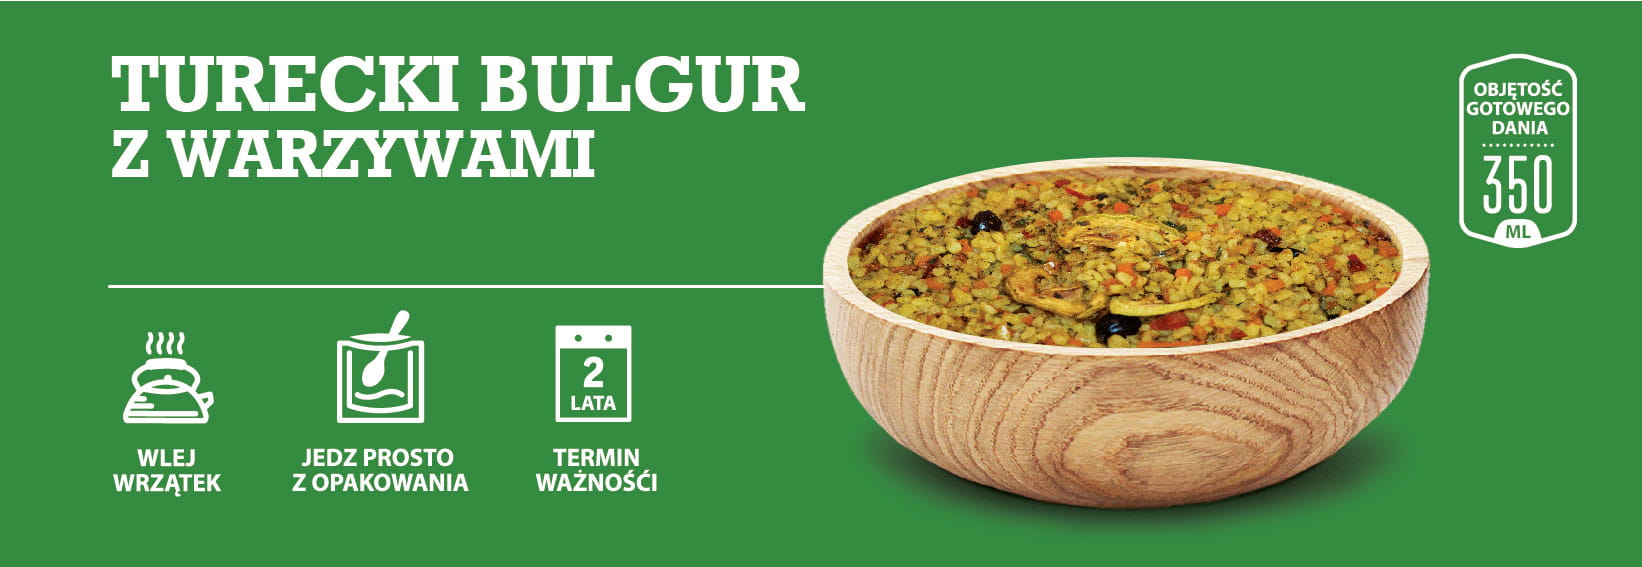 Turecki bulgur z warzywami